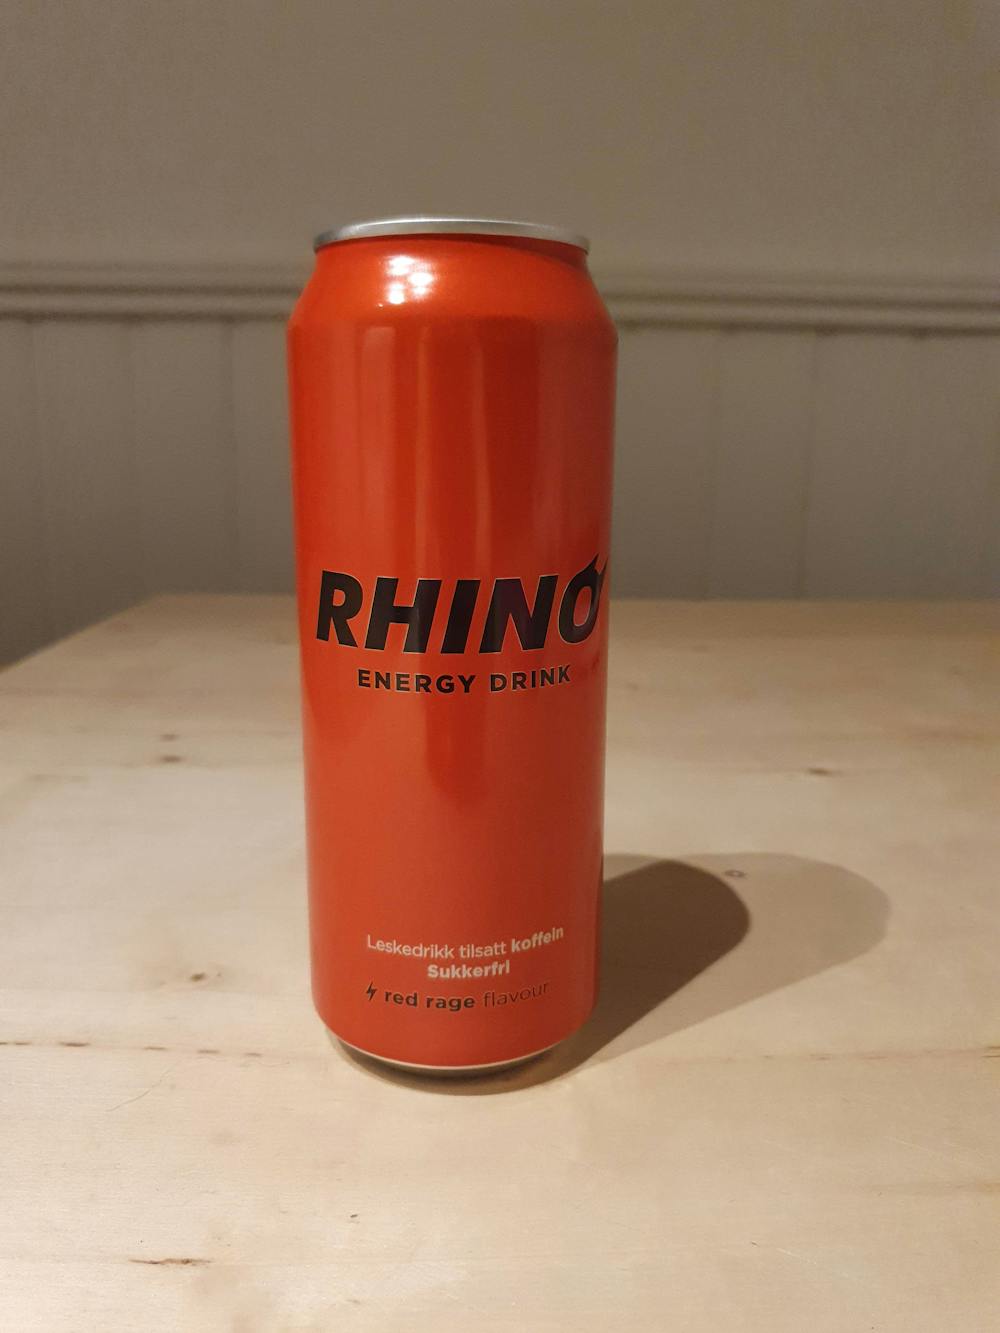 Rhino Energy Drink, Rhino